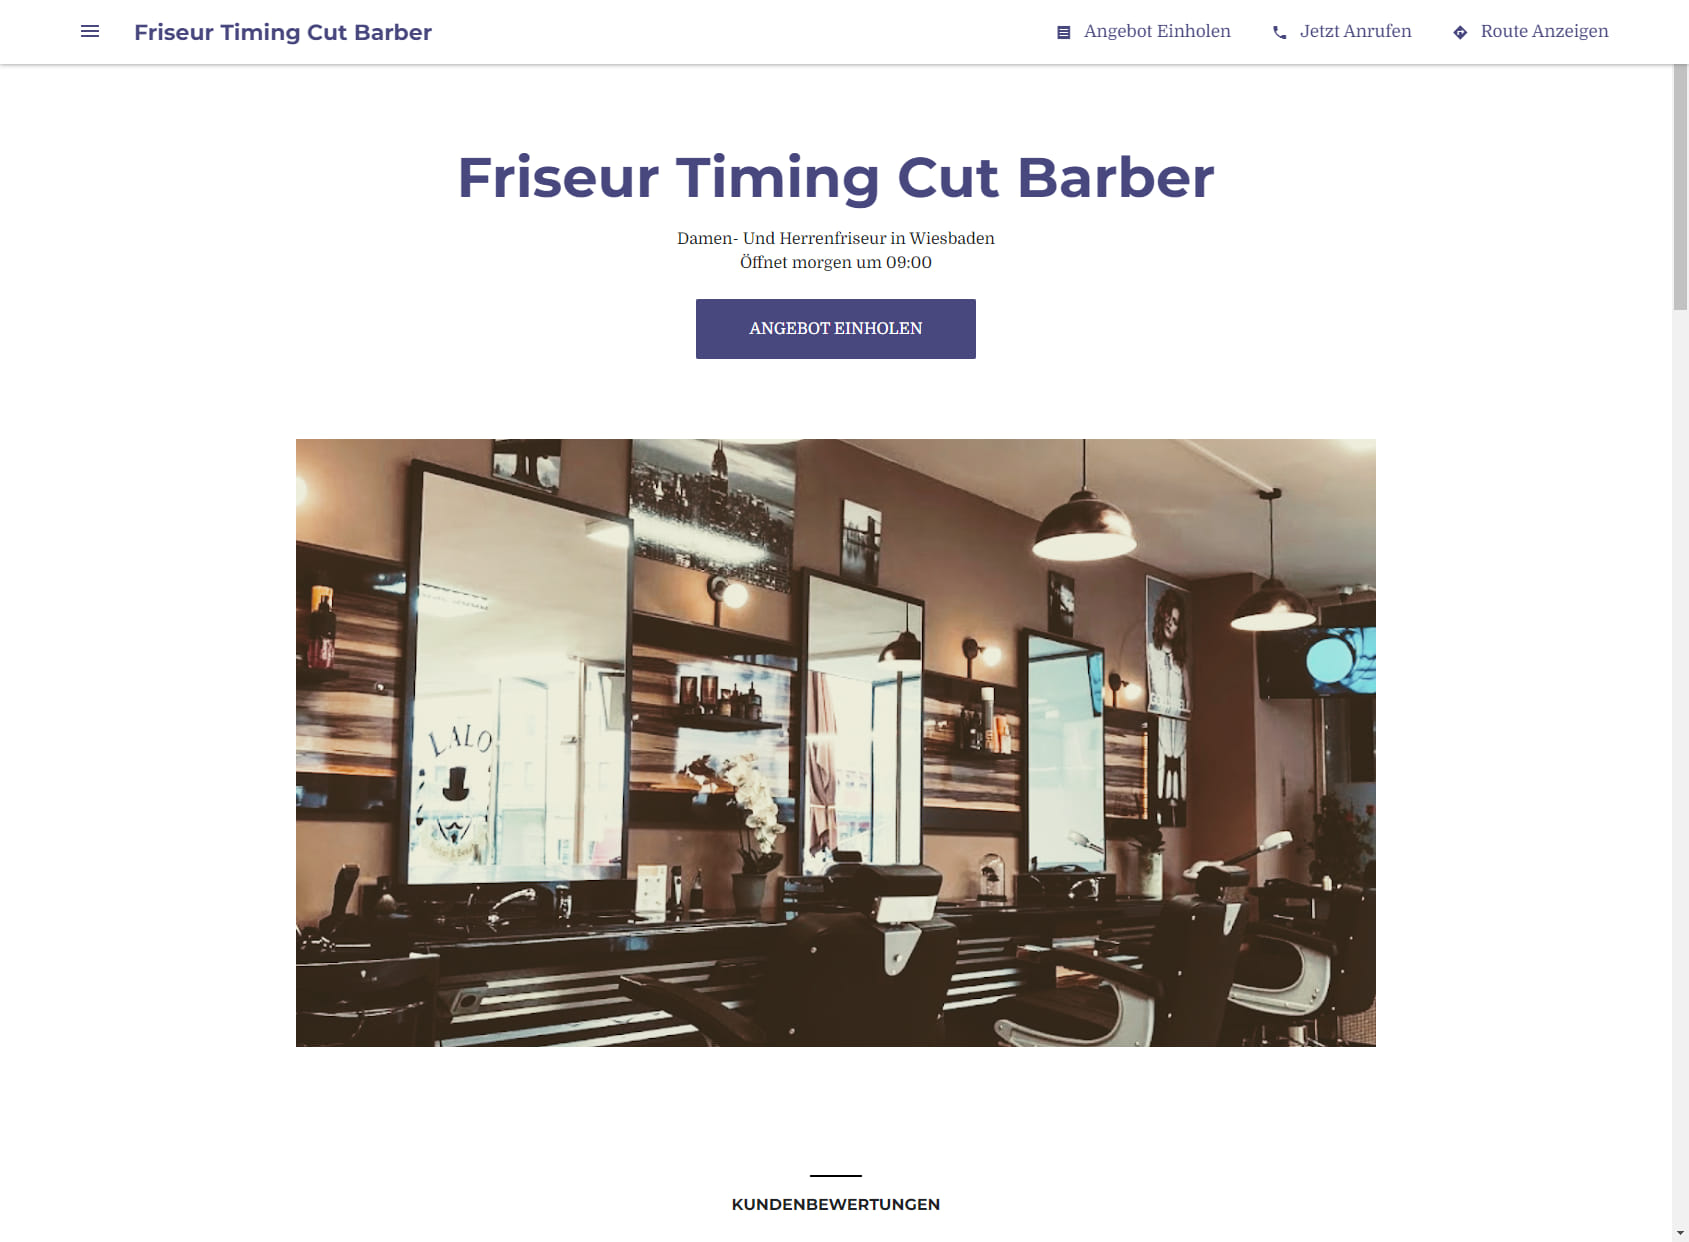 Friseur Timing Cut Barber